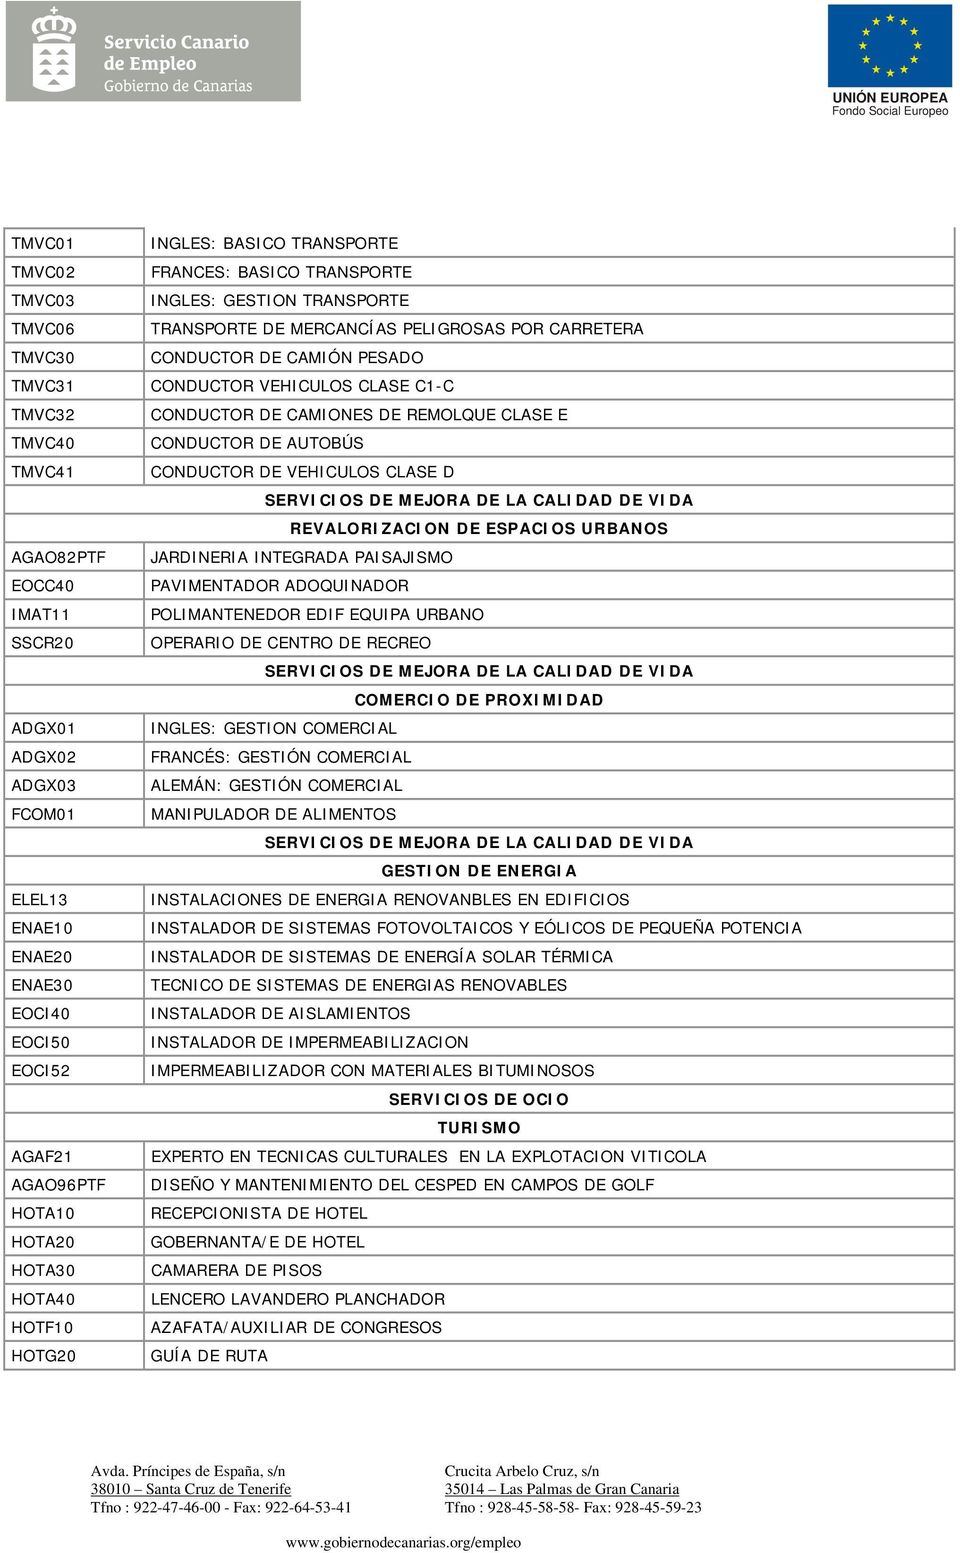 CONDUCTOR VEHICULOS CLASE C1-C CONDUCTOR DE CAMIONES DE REMOLQUE CLASE E CONDUCTOR DE AUTOBÚS CONDUCTOR DE VEHICULOS CLASE D REVALORIZACION DE ESPACIOS URBANOS JARDINERIA INTEGRADA PAISAJISMO